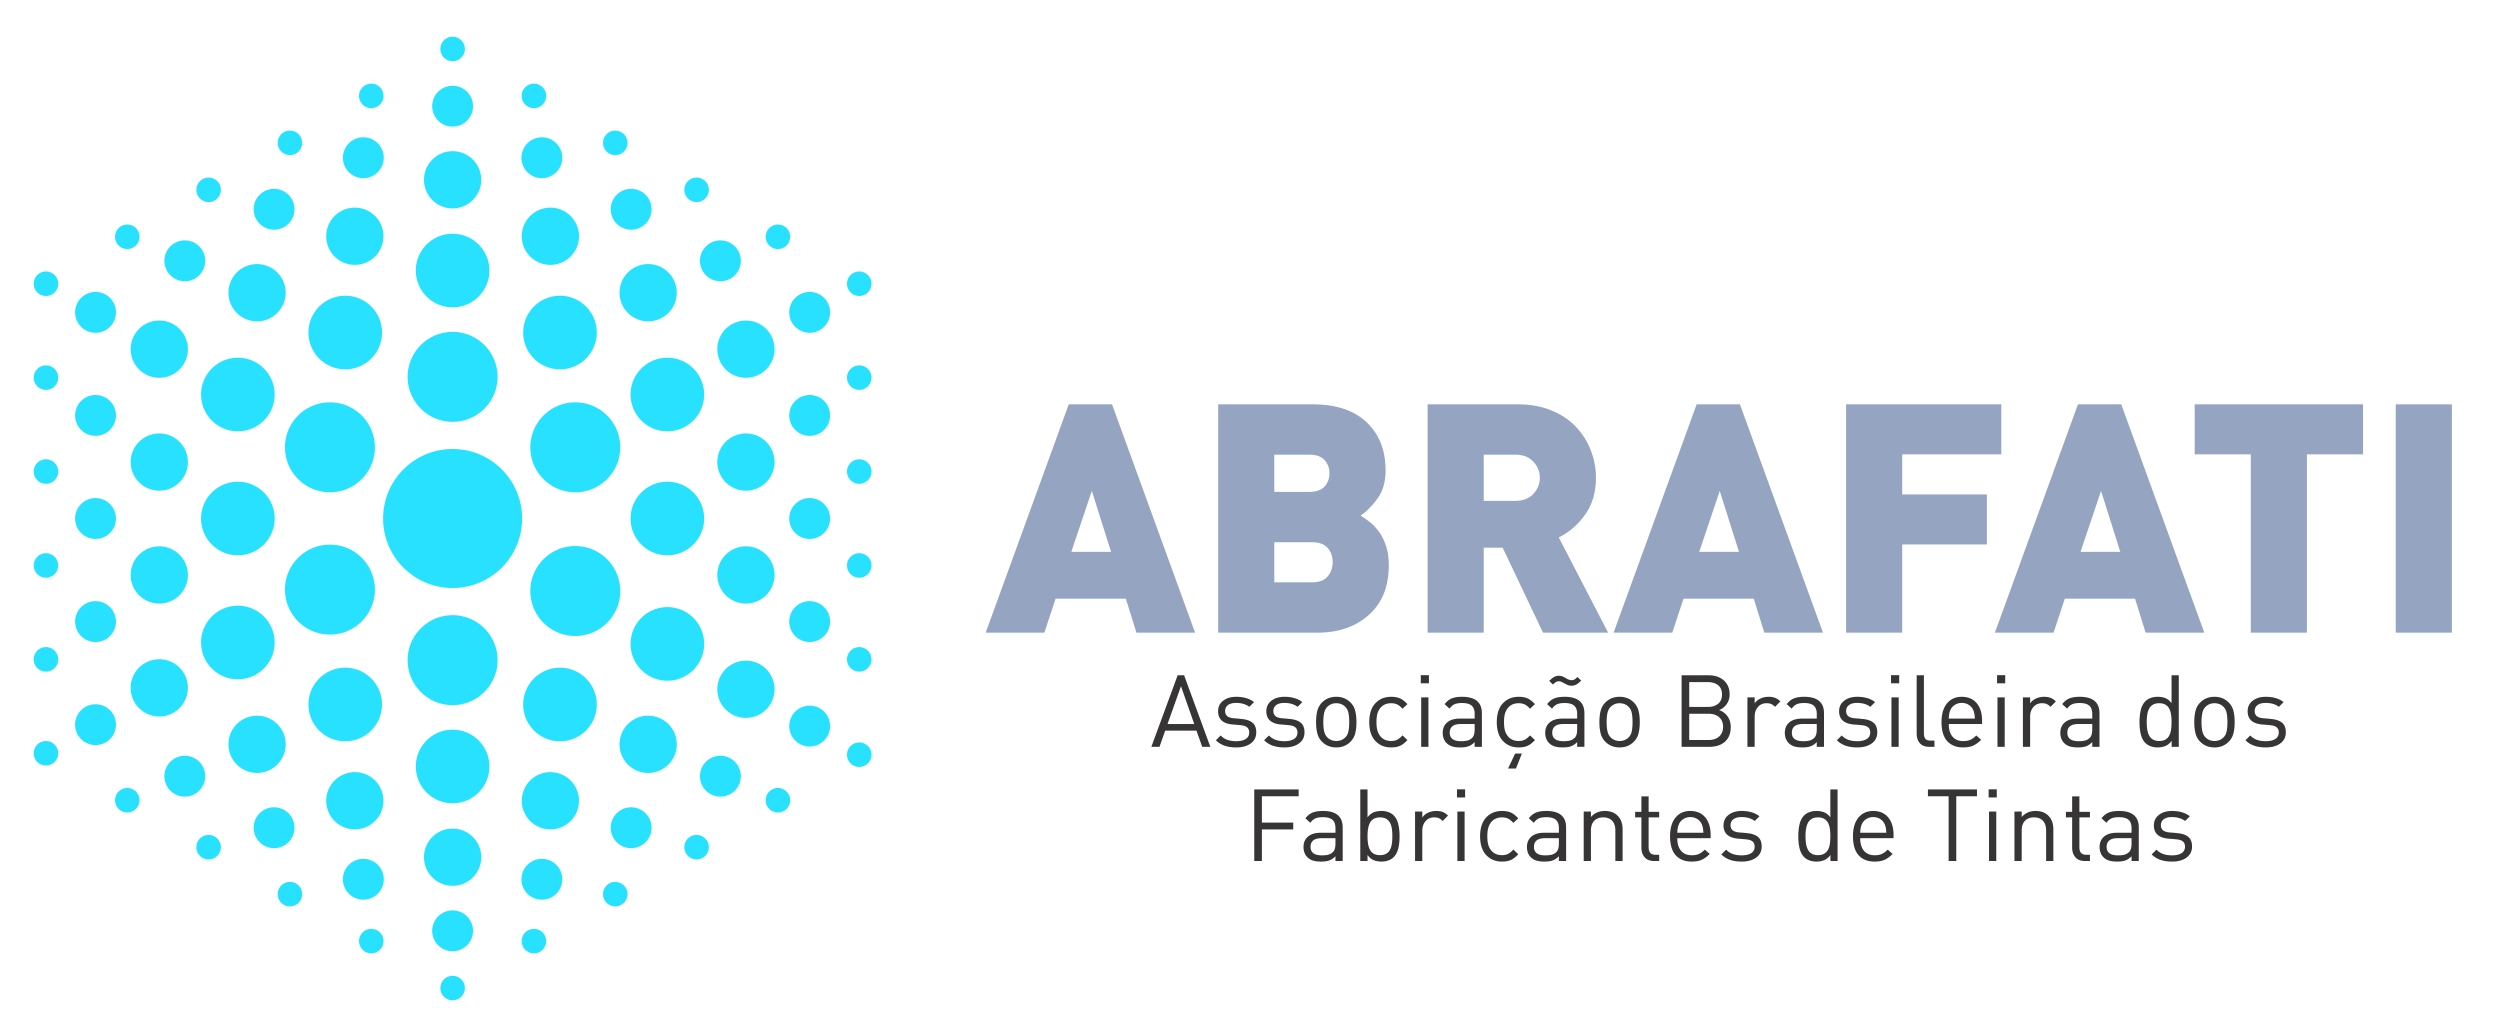 Associação Brasileira dos Fabricantes de Tintas | ABRAFATI